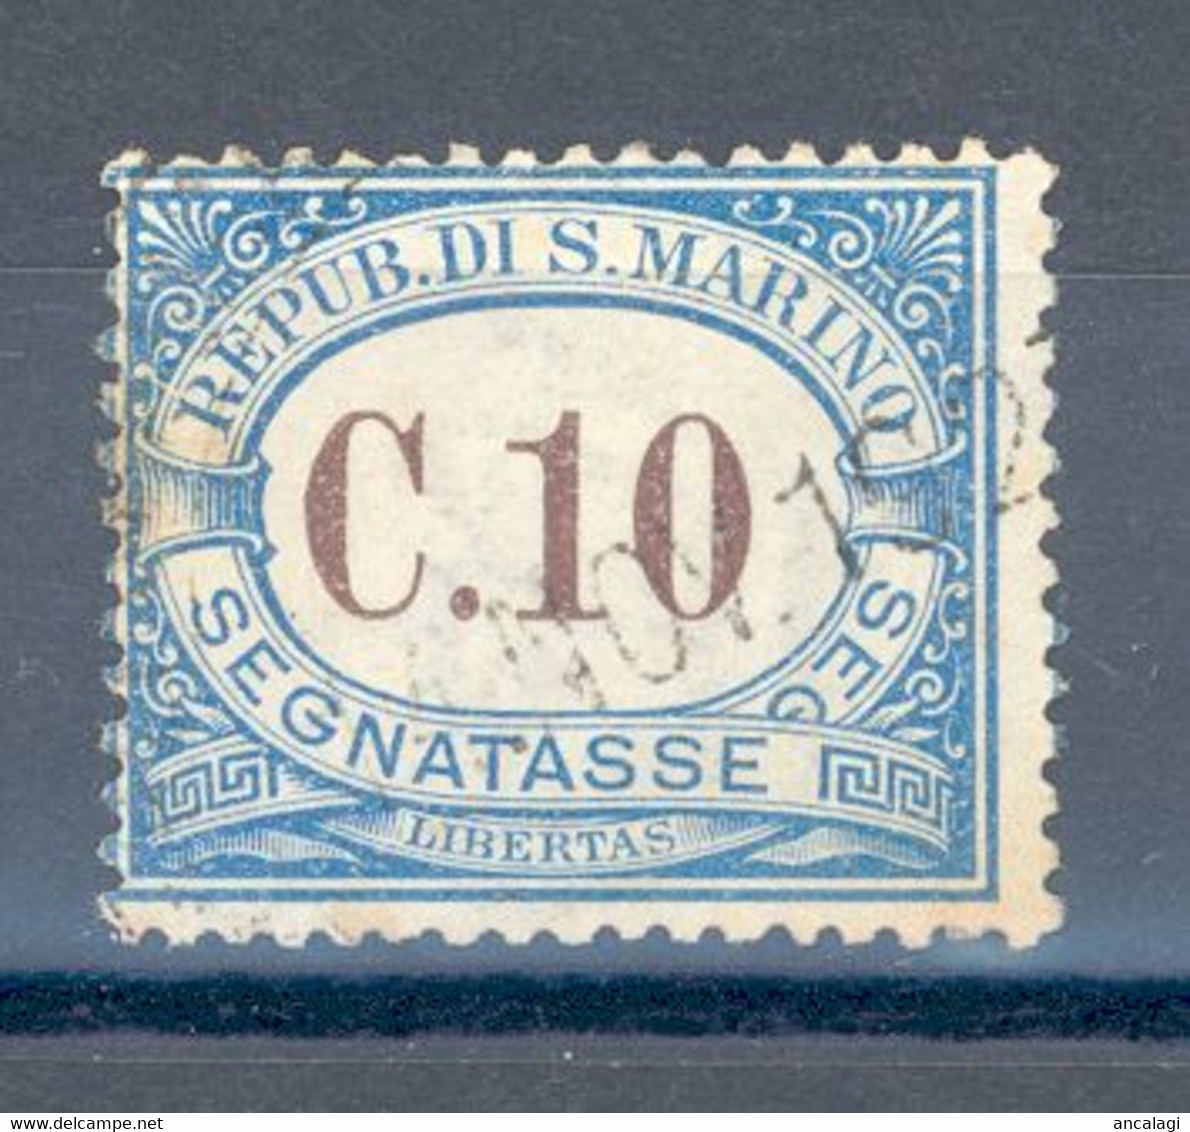 RSM F.lli USATI SEGNATASSE 018 - San Marino 1925 - 1v. Da C.10 - Strafport